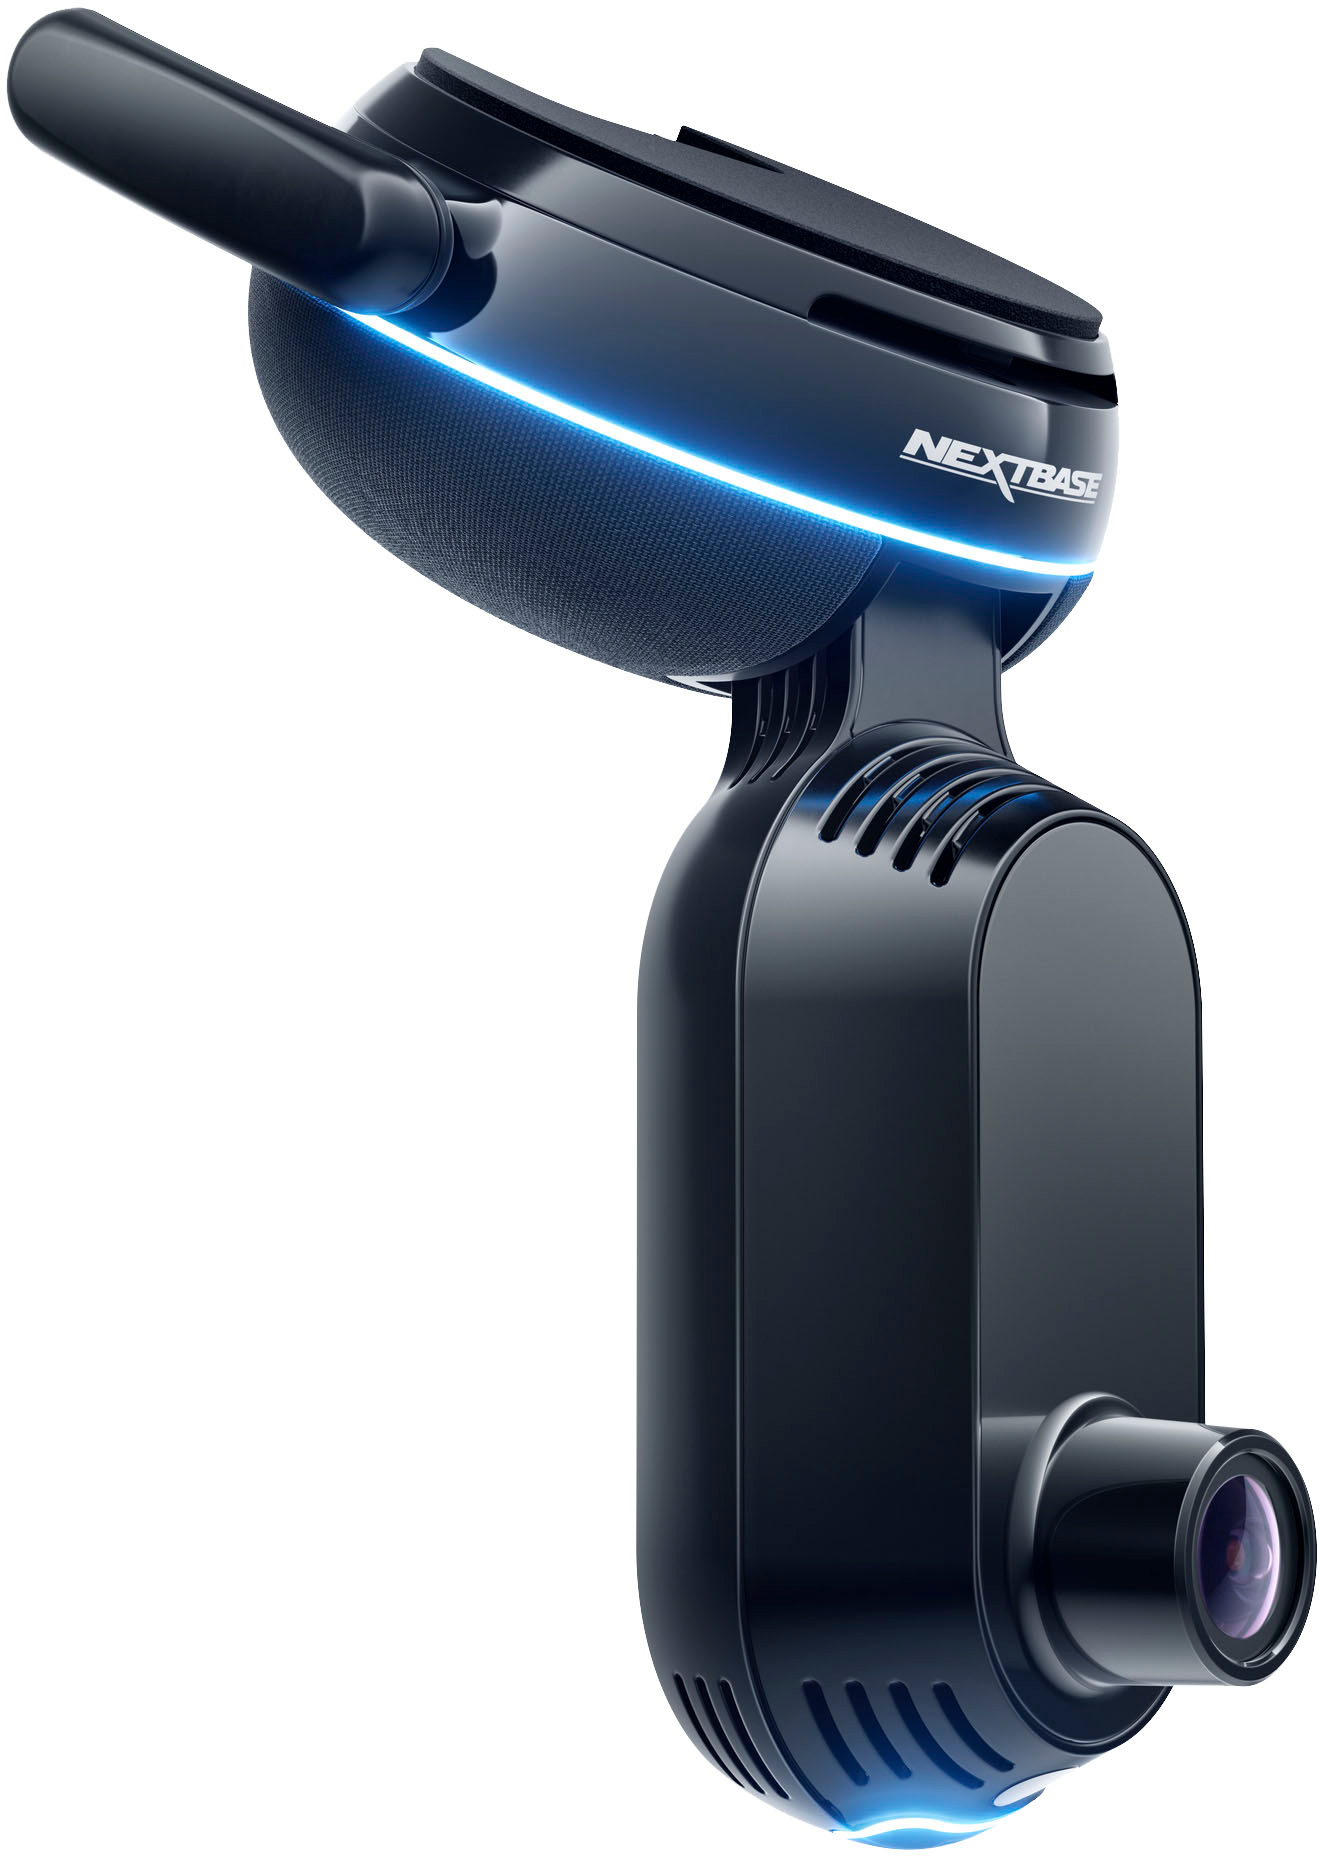 Meet Nexar One - The Smartest 4K Dash Cam We've Ever Made 